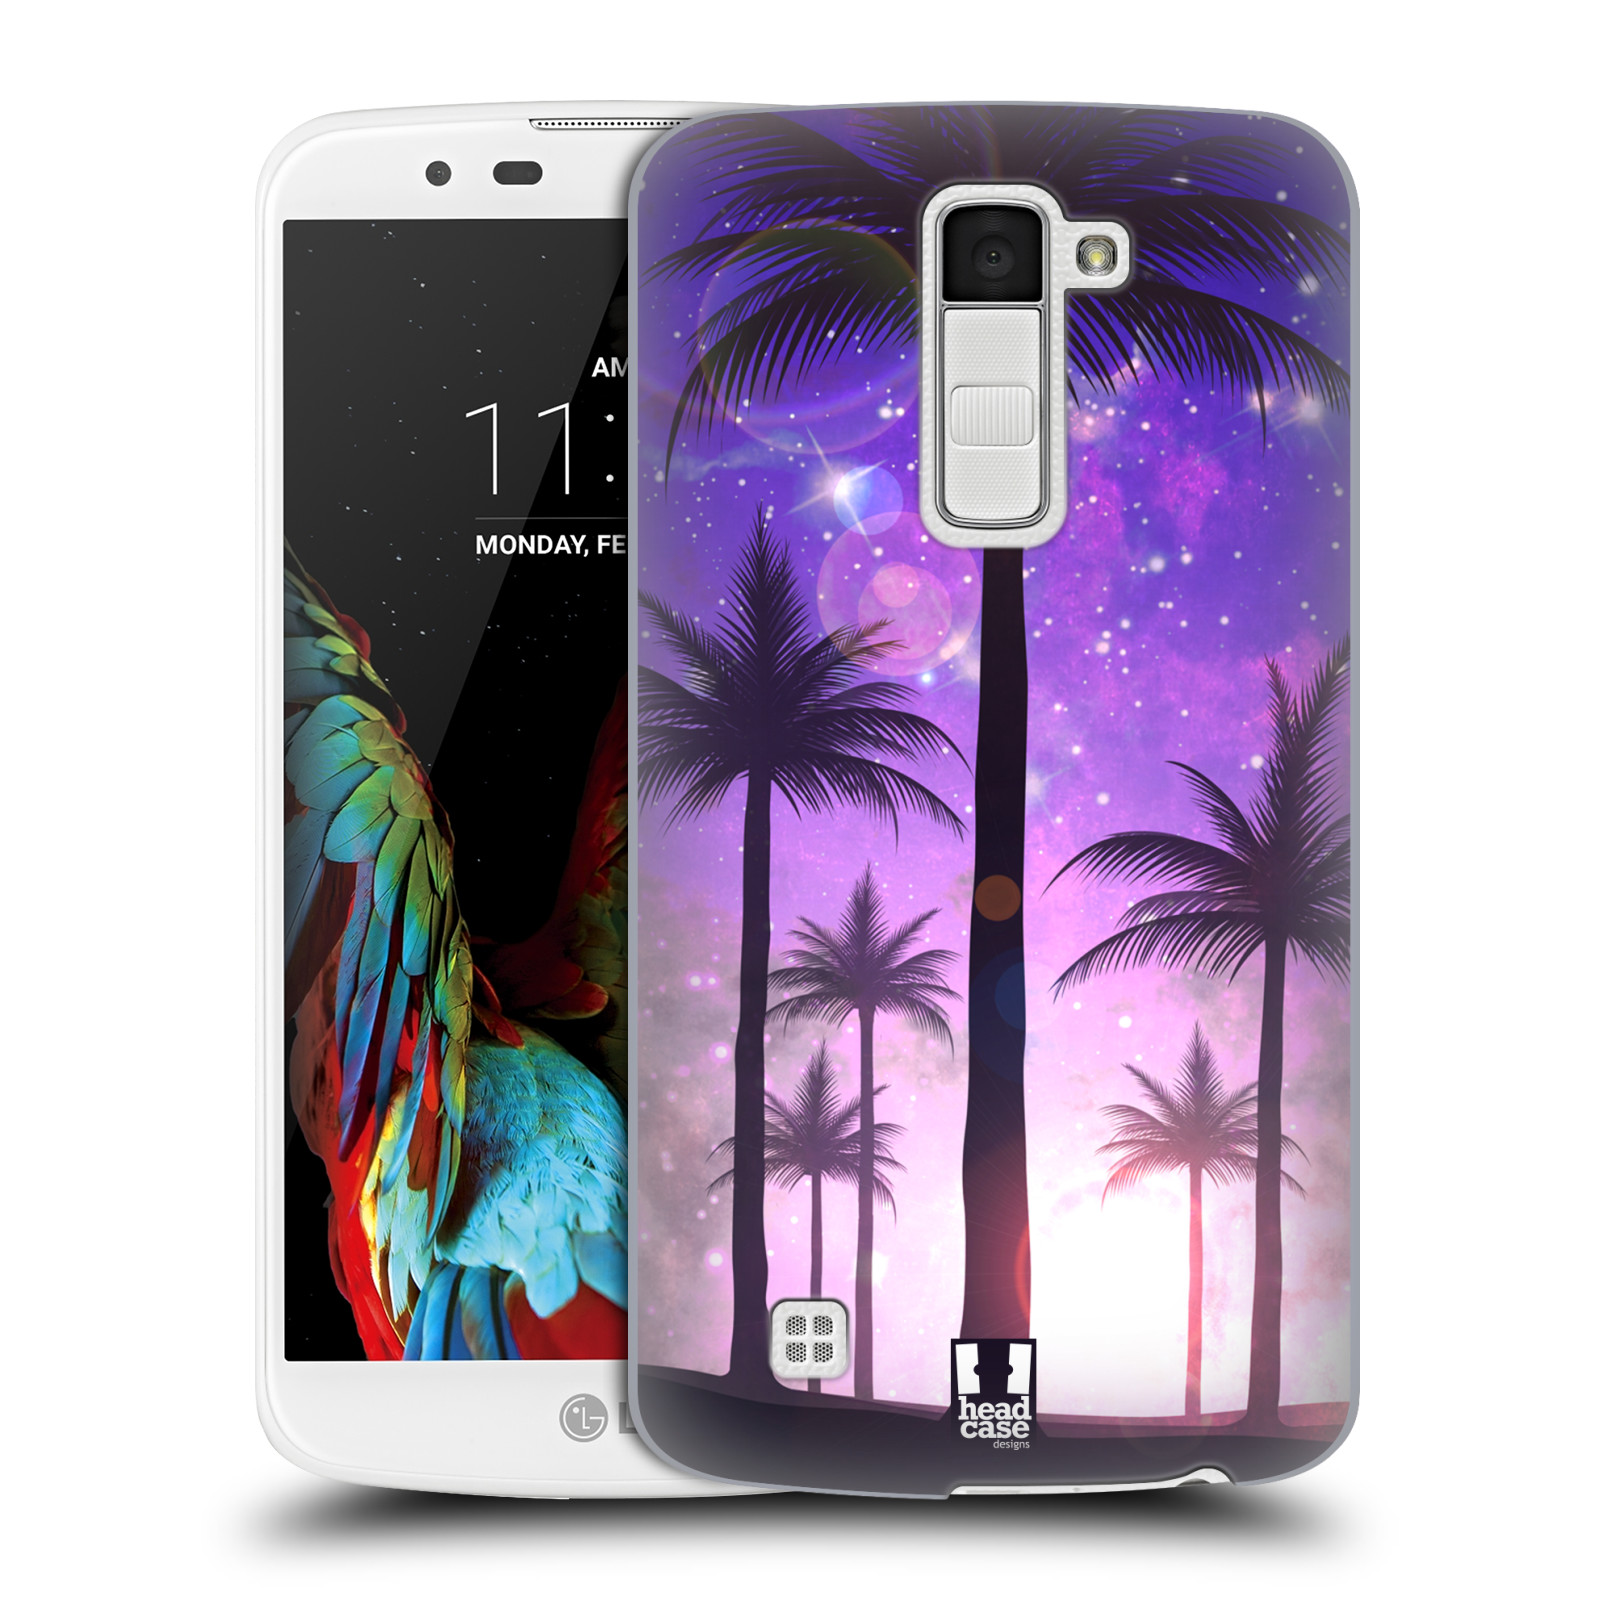 HEAD CASE plastový obal na mobil LG K10 vzor Kreslený motiv silueta moře a palmy FIALOVÁ